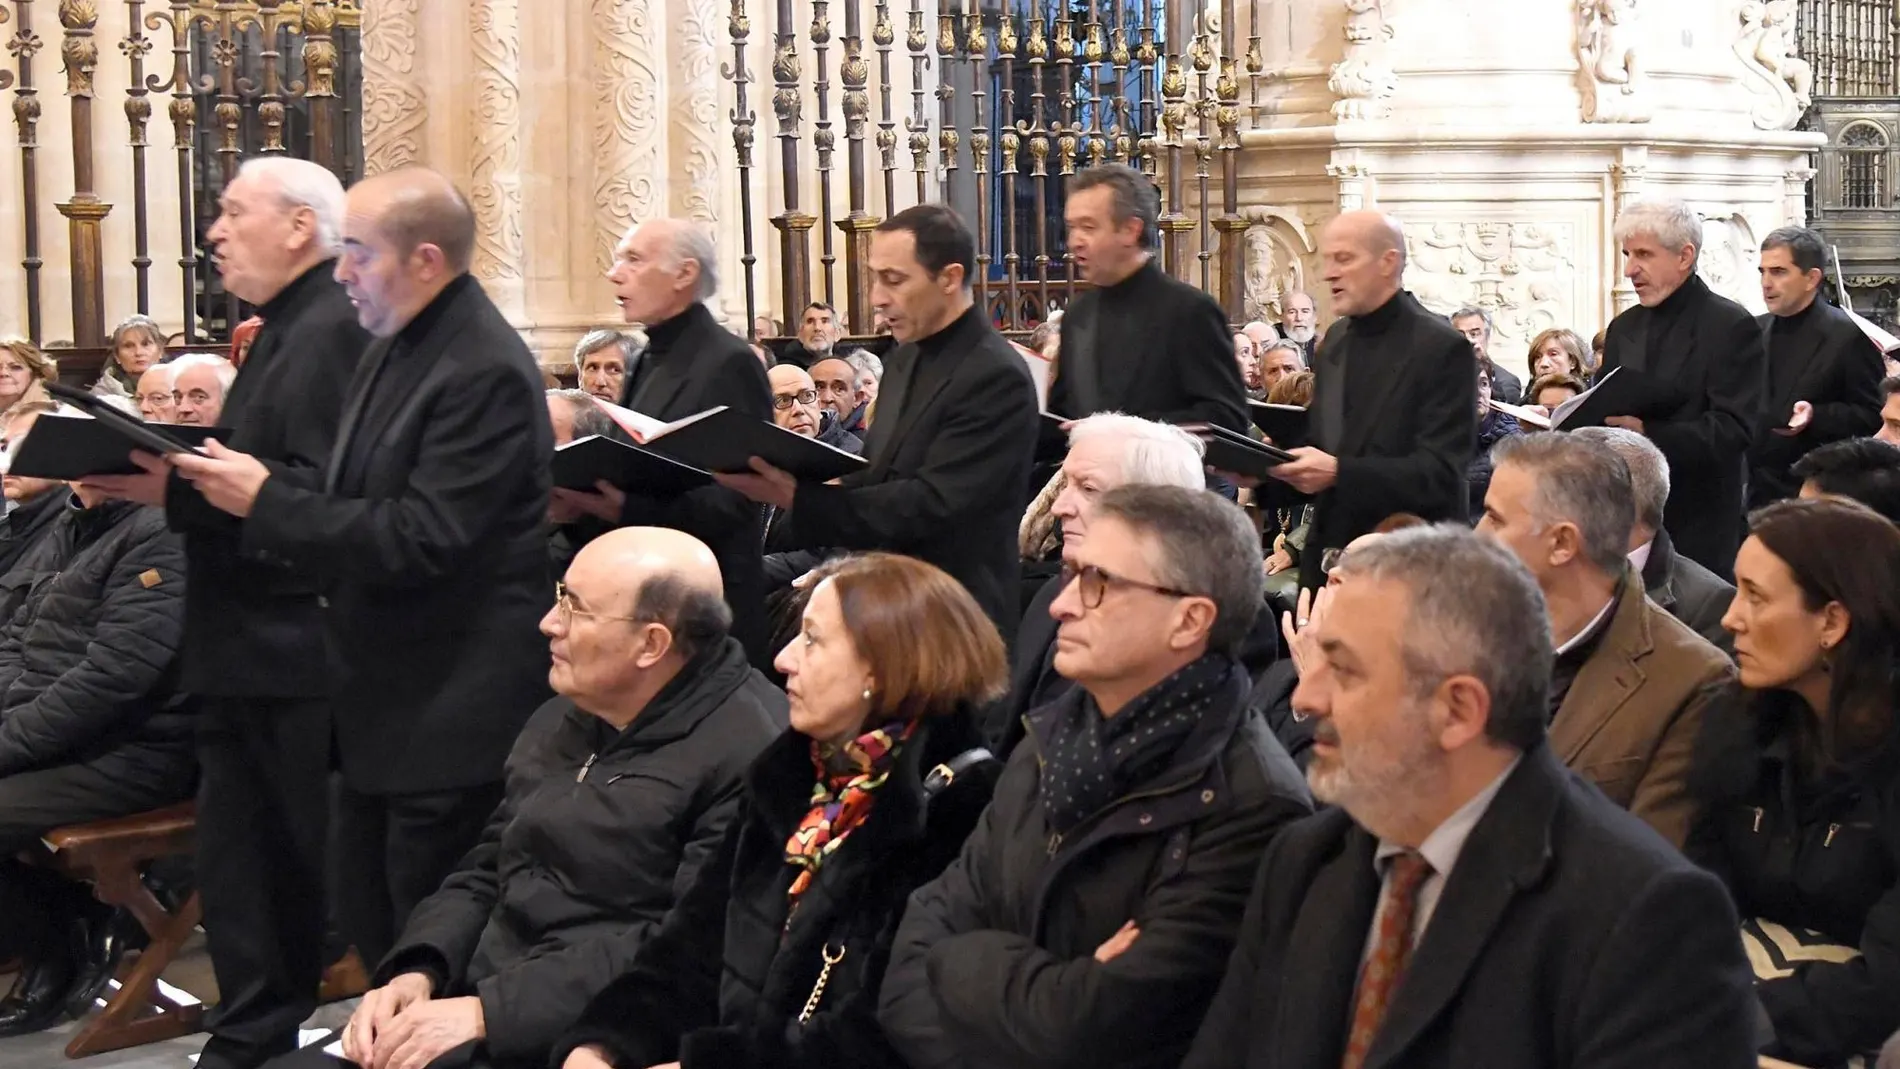 The Gregorian Chant Choir of Spain ofrece un concierto de canto gregoriano para conmemorar el VIII aniversario de la Catedral de Burgos